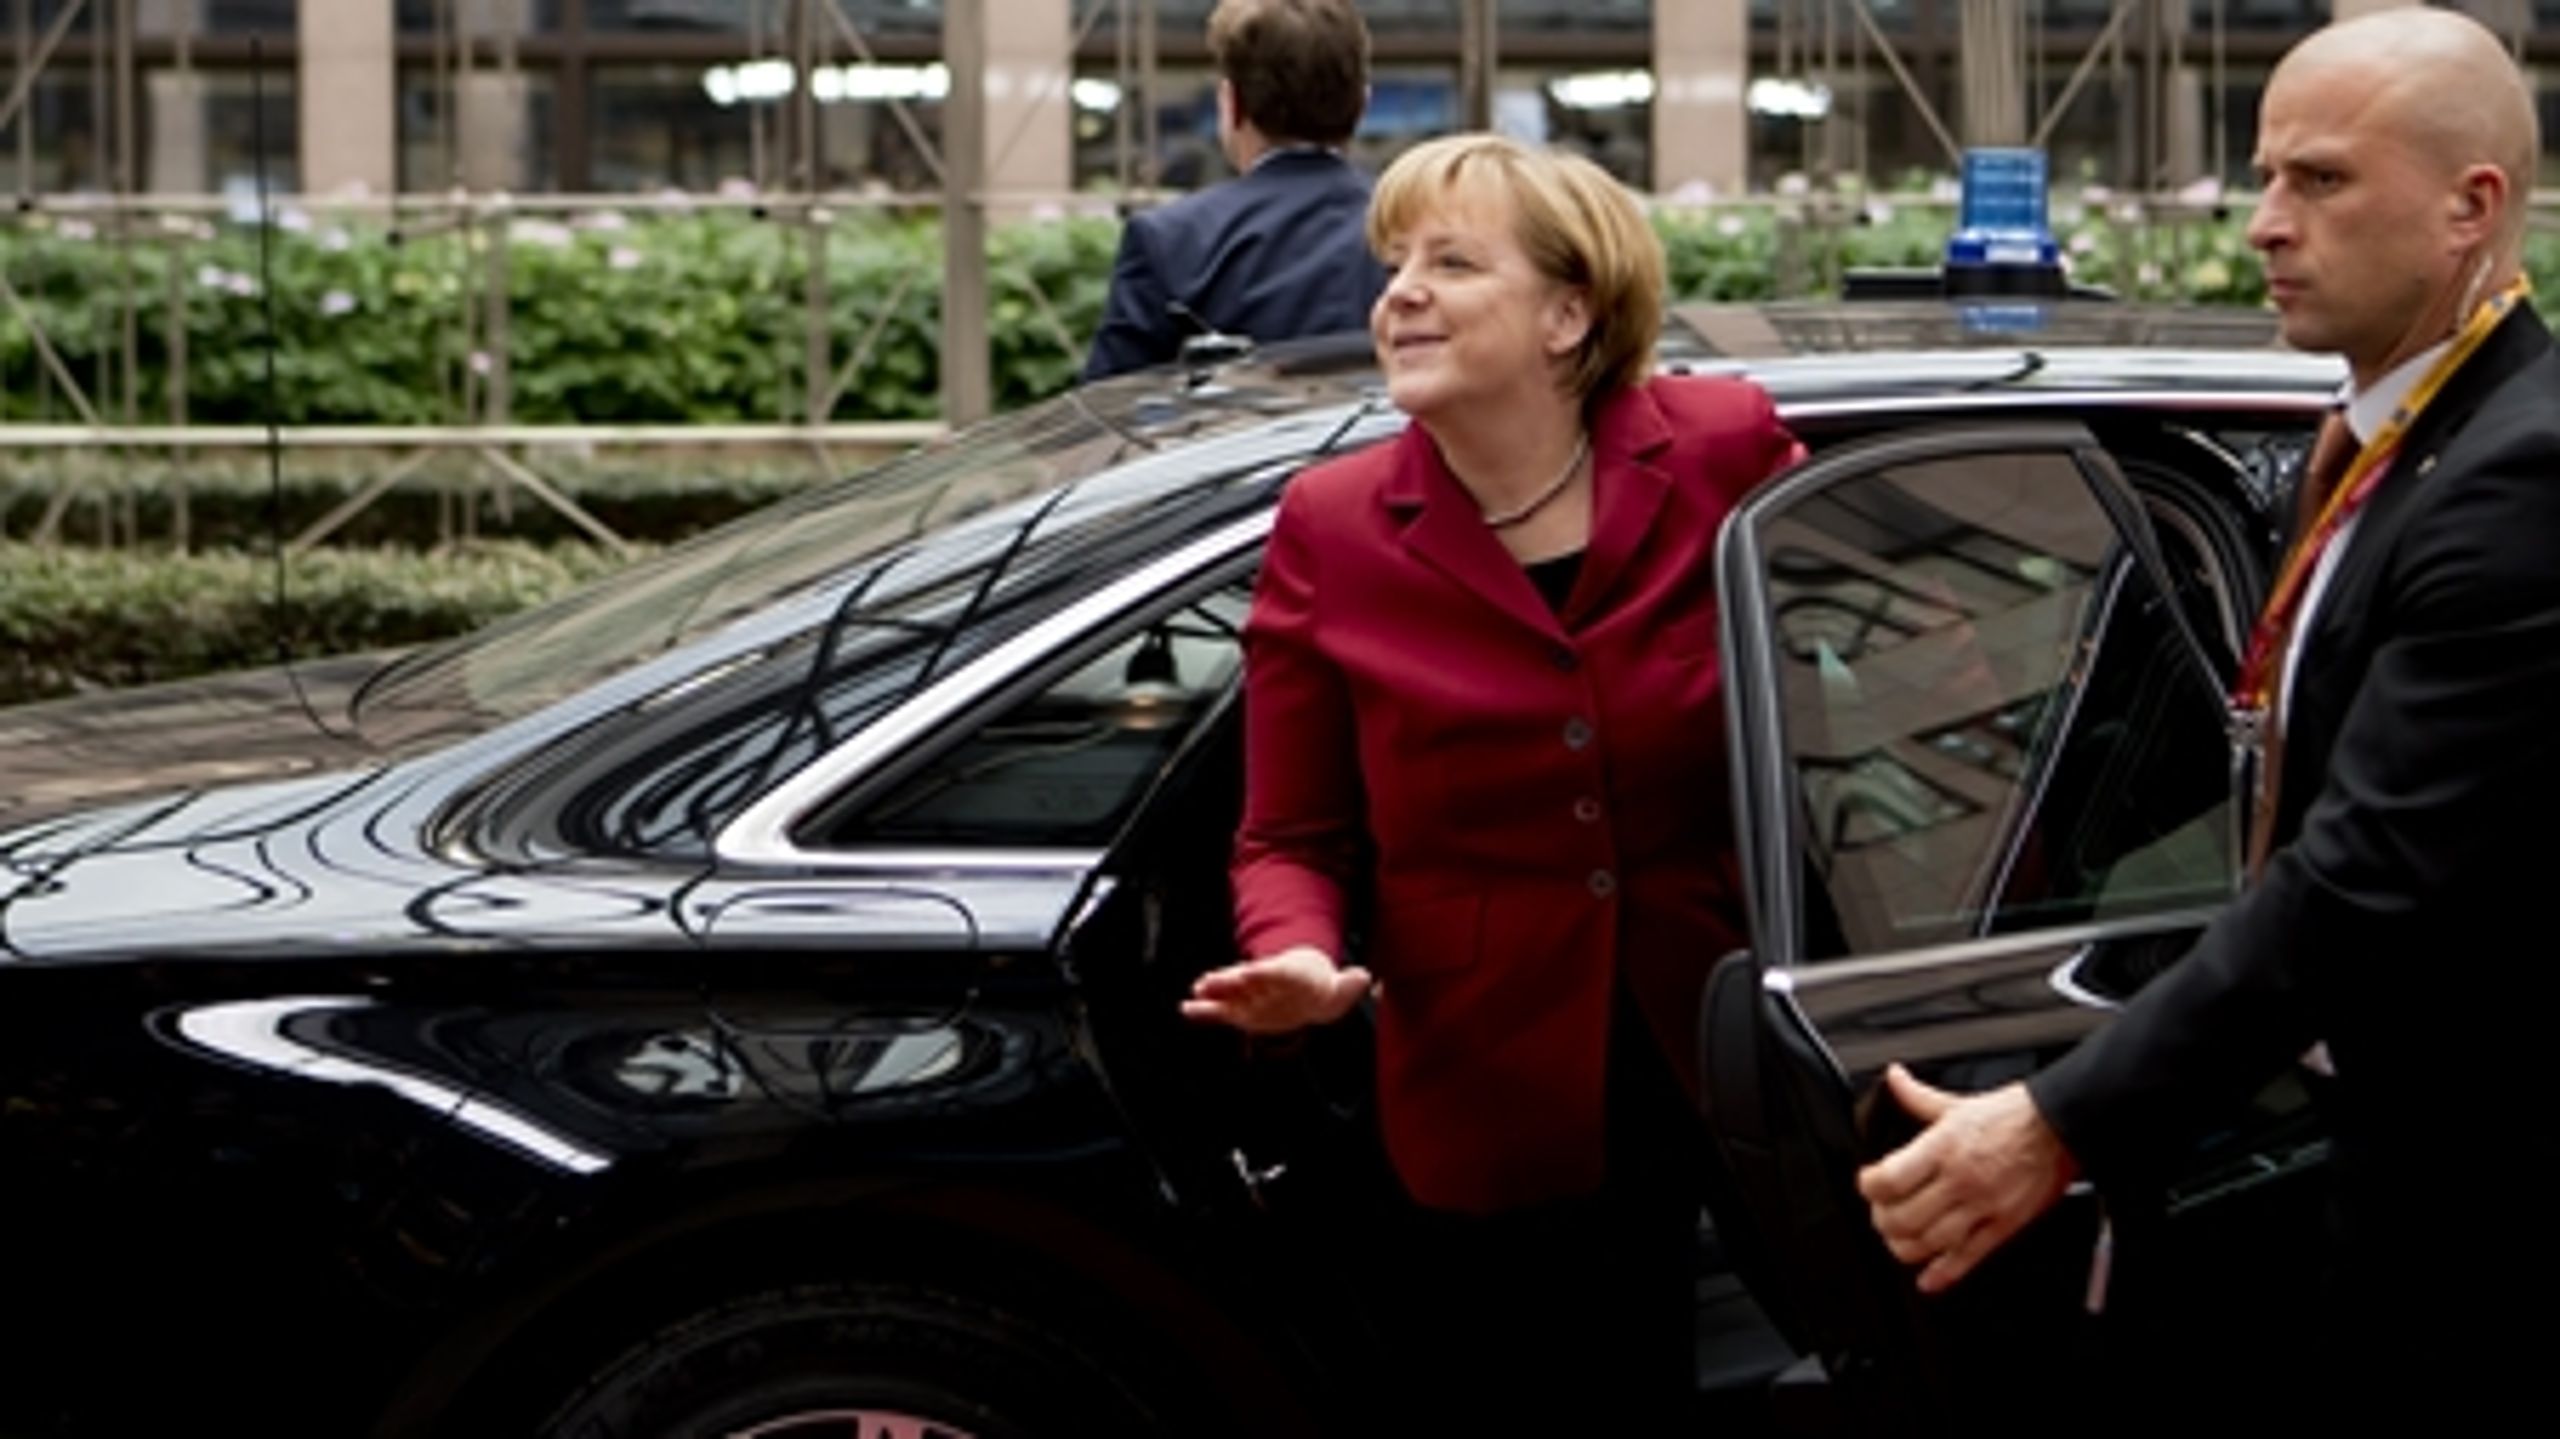 Den tyske kansler, Angela Merkel, var personligt involveret i at få udsat de nye regler om CO2-udledning, som særligt rammer den tyske bilindustri.